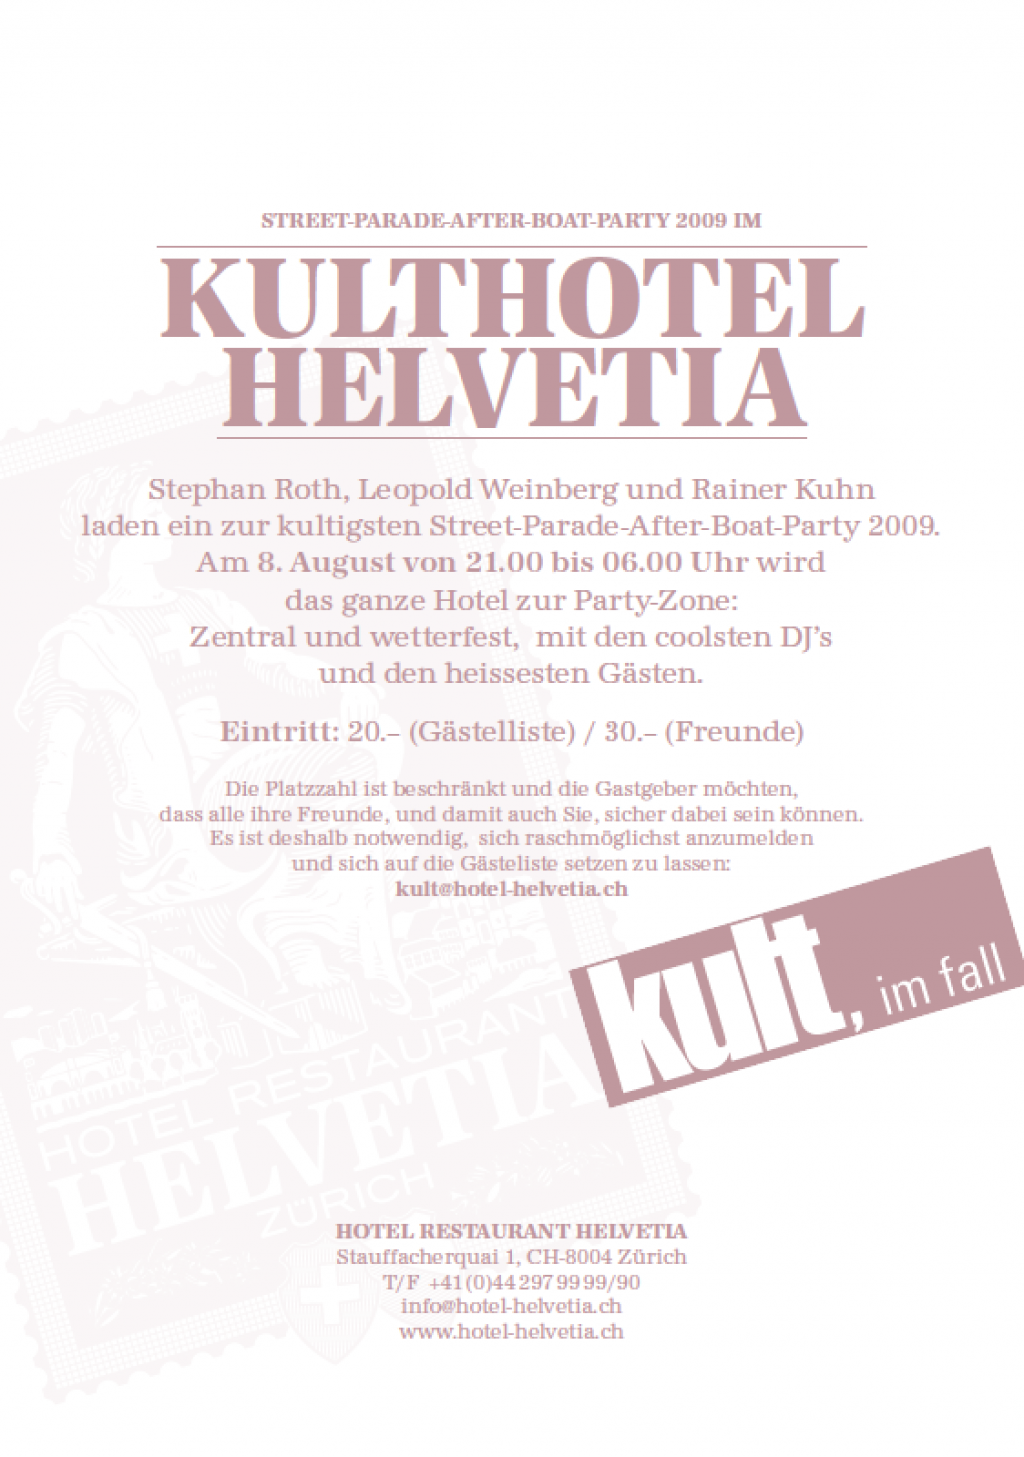 Einladung zur ersten Kulthotel Helvetia Party